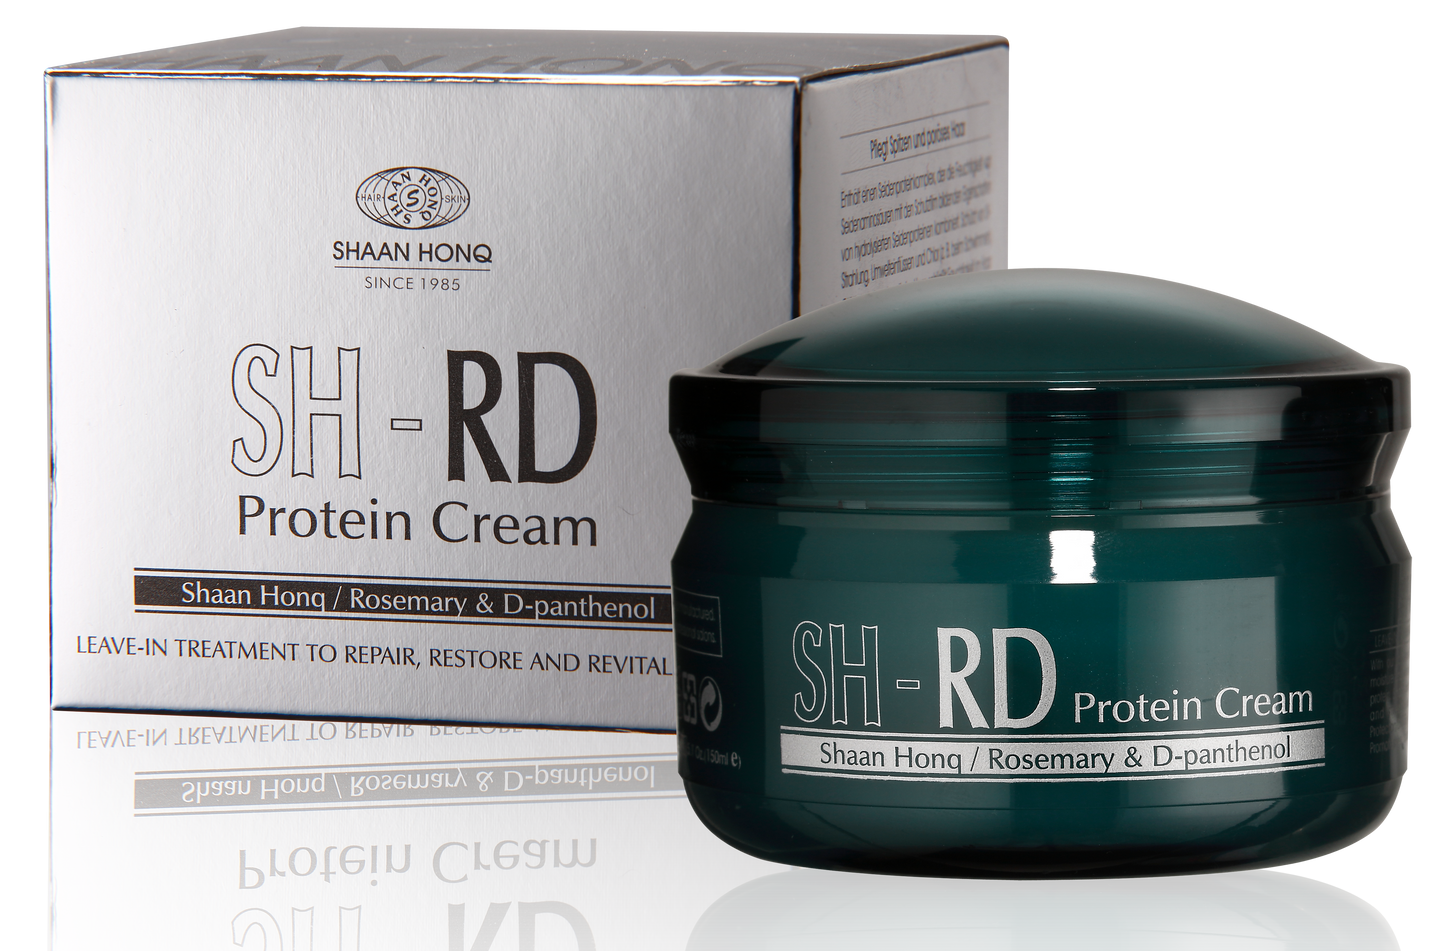 SH-RD Protein Cream (5.1oz/150ml)